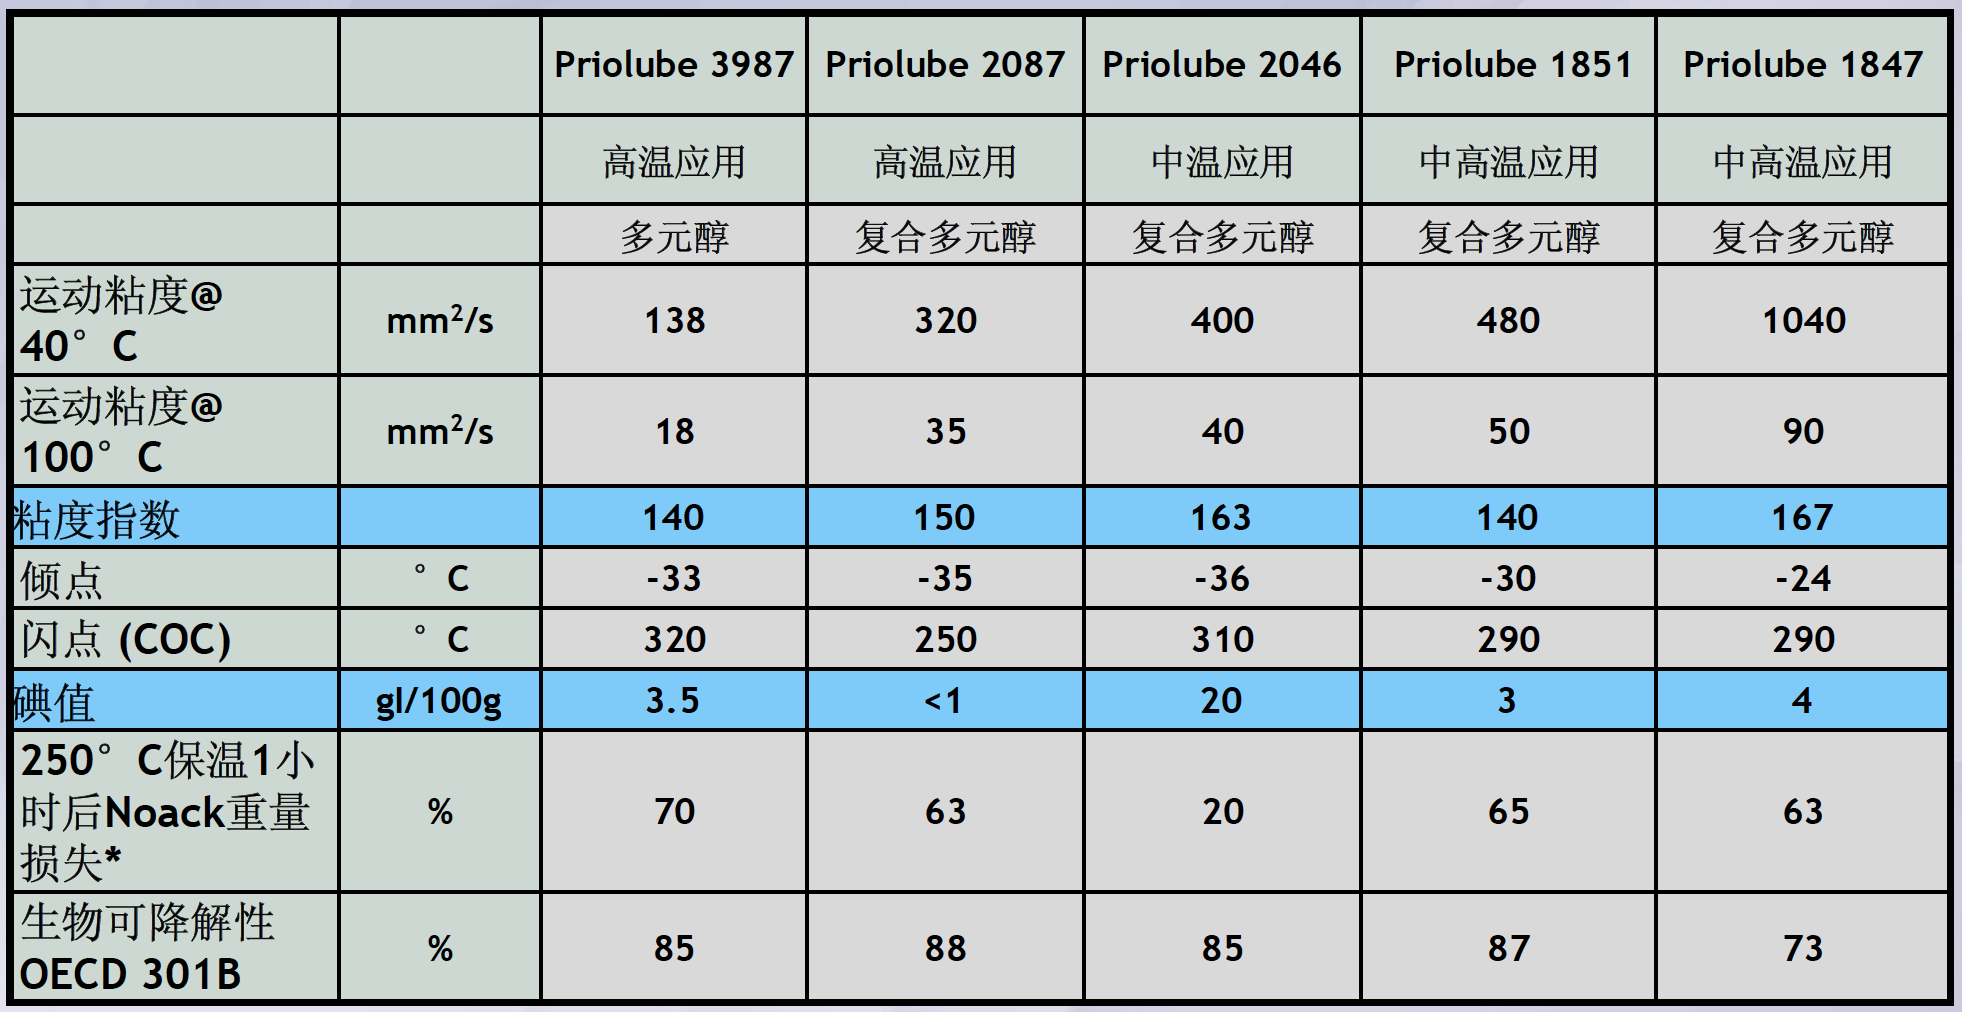 禾大Priolube系列产品参数表.jpg